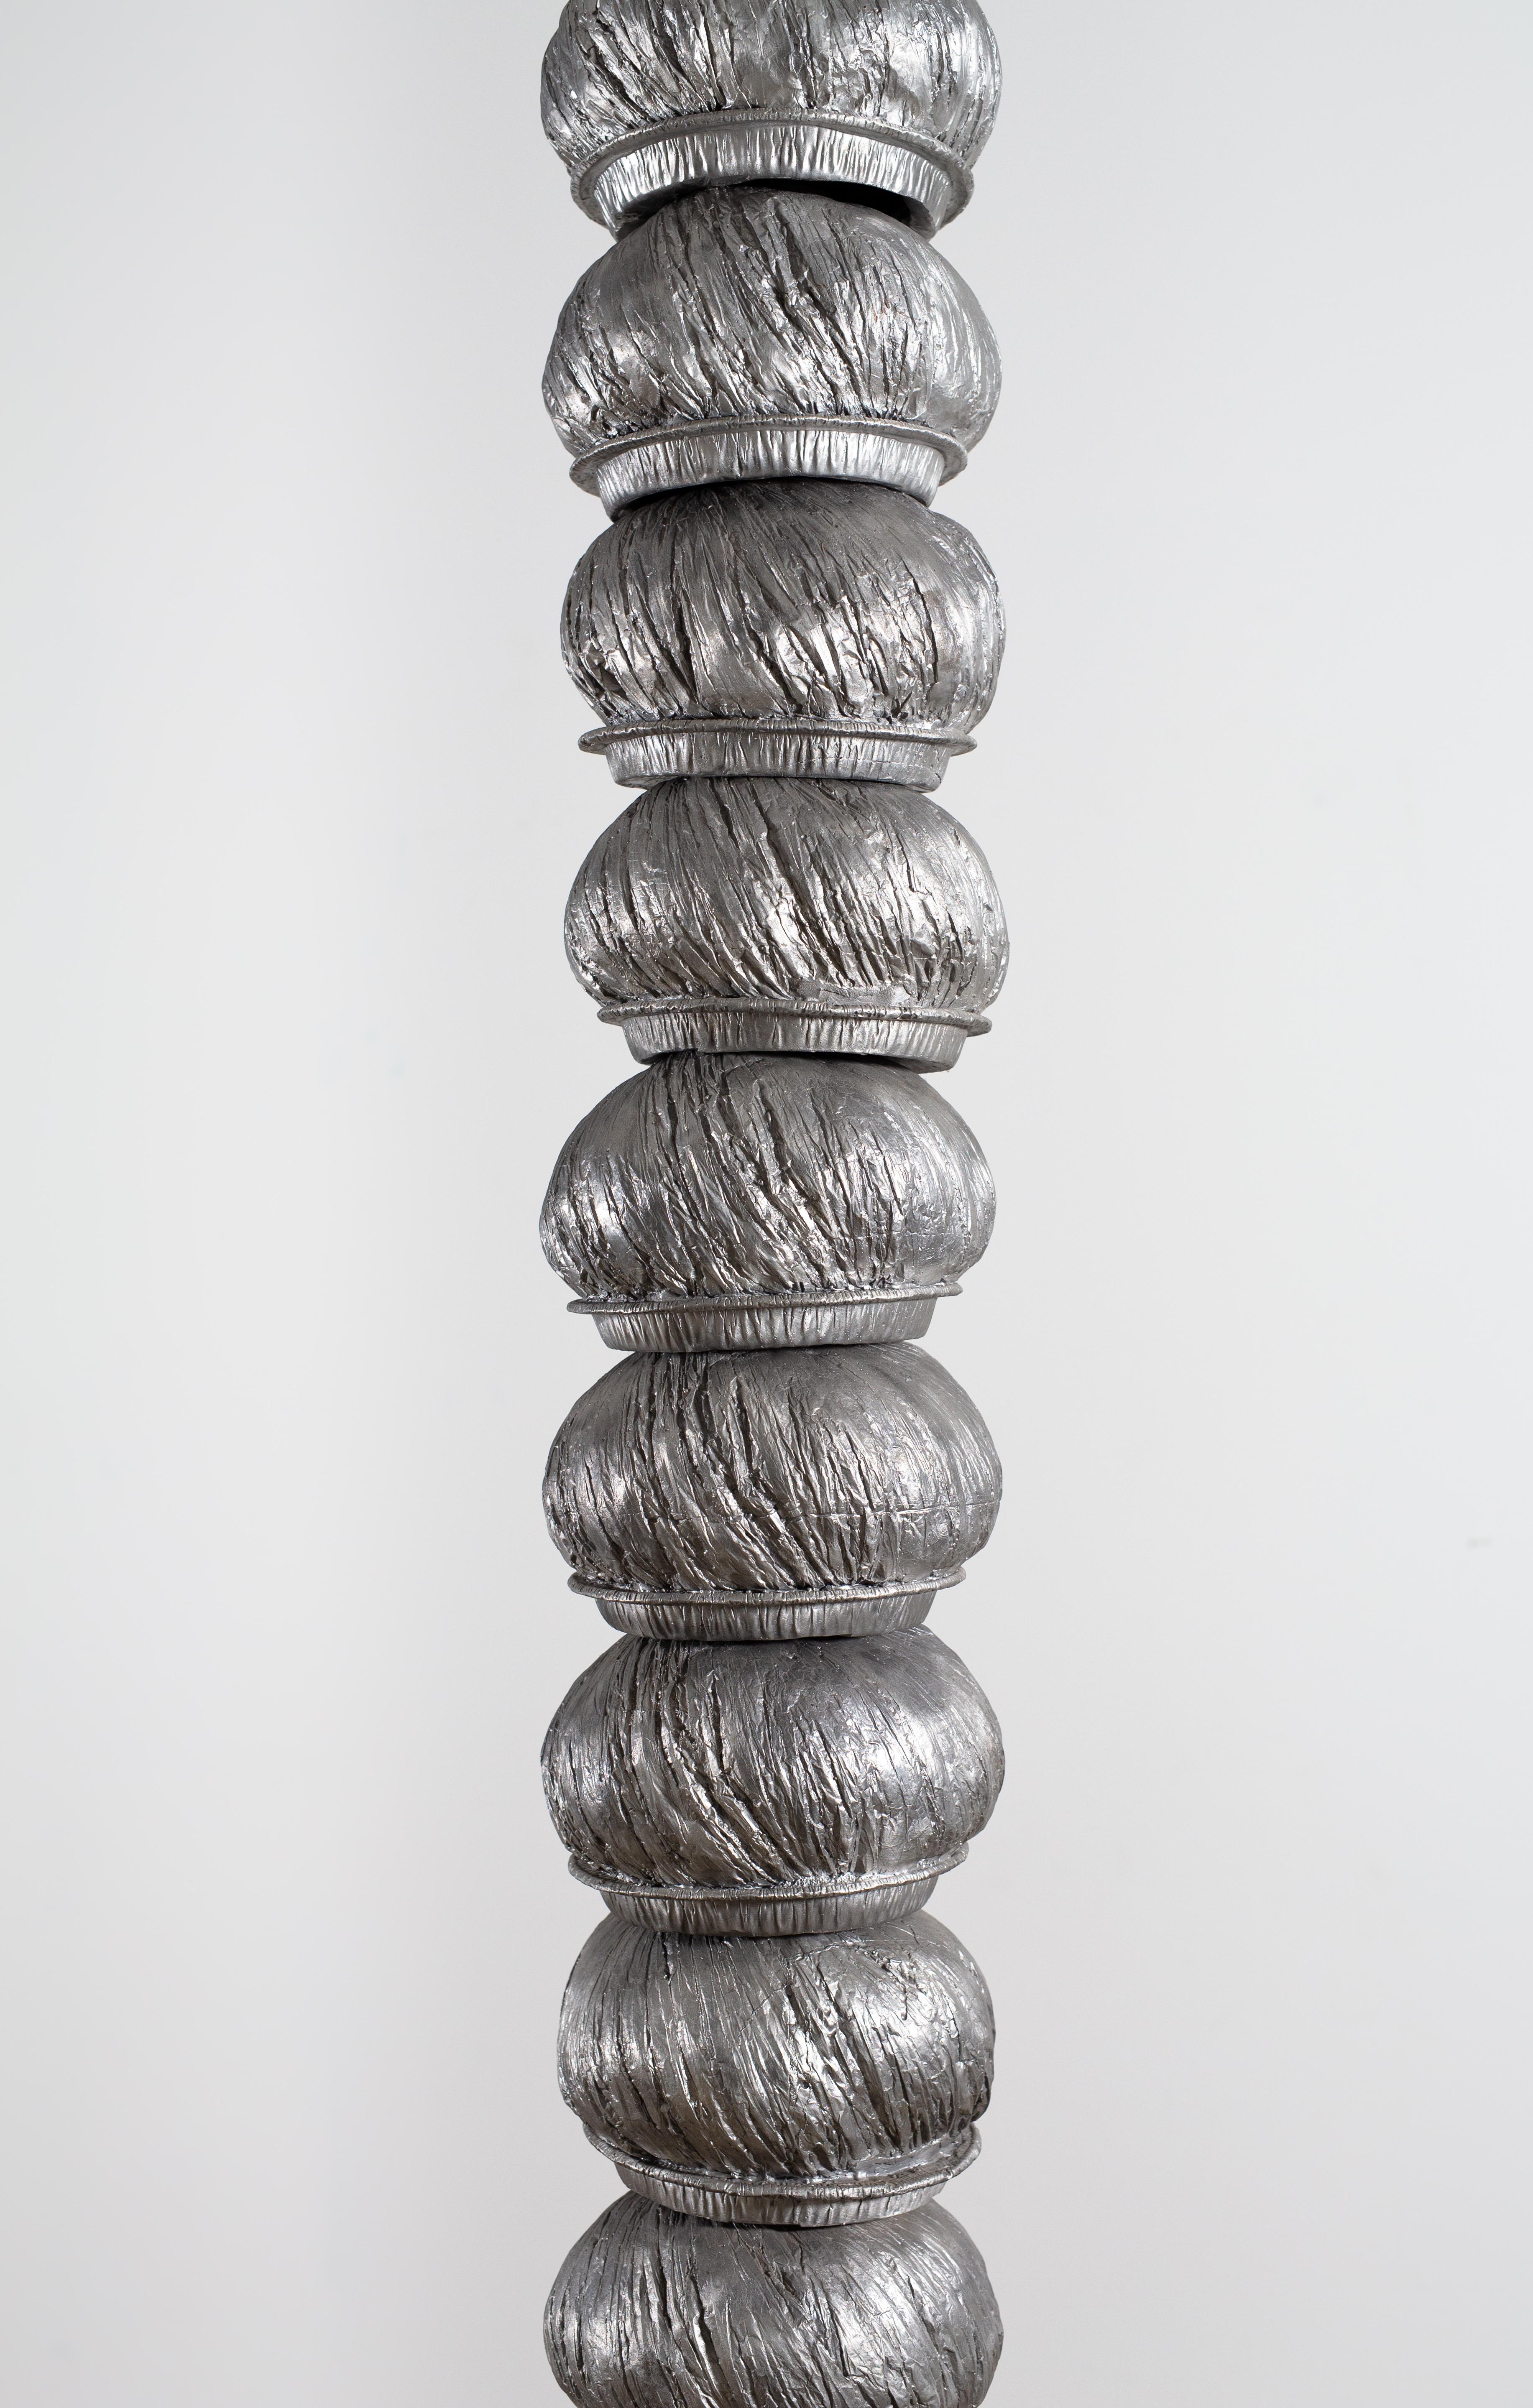 Burt Payne 3 Abstract Sculpture - Spiral Jiffy